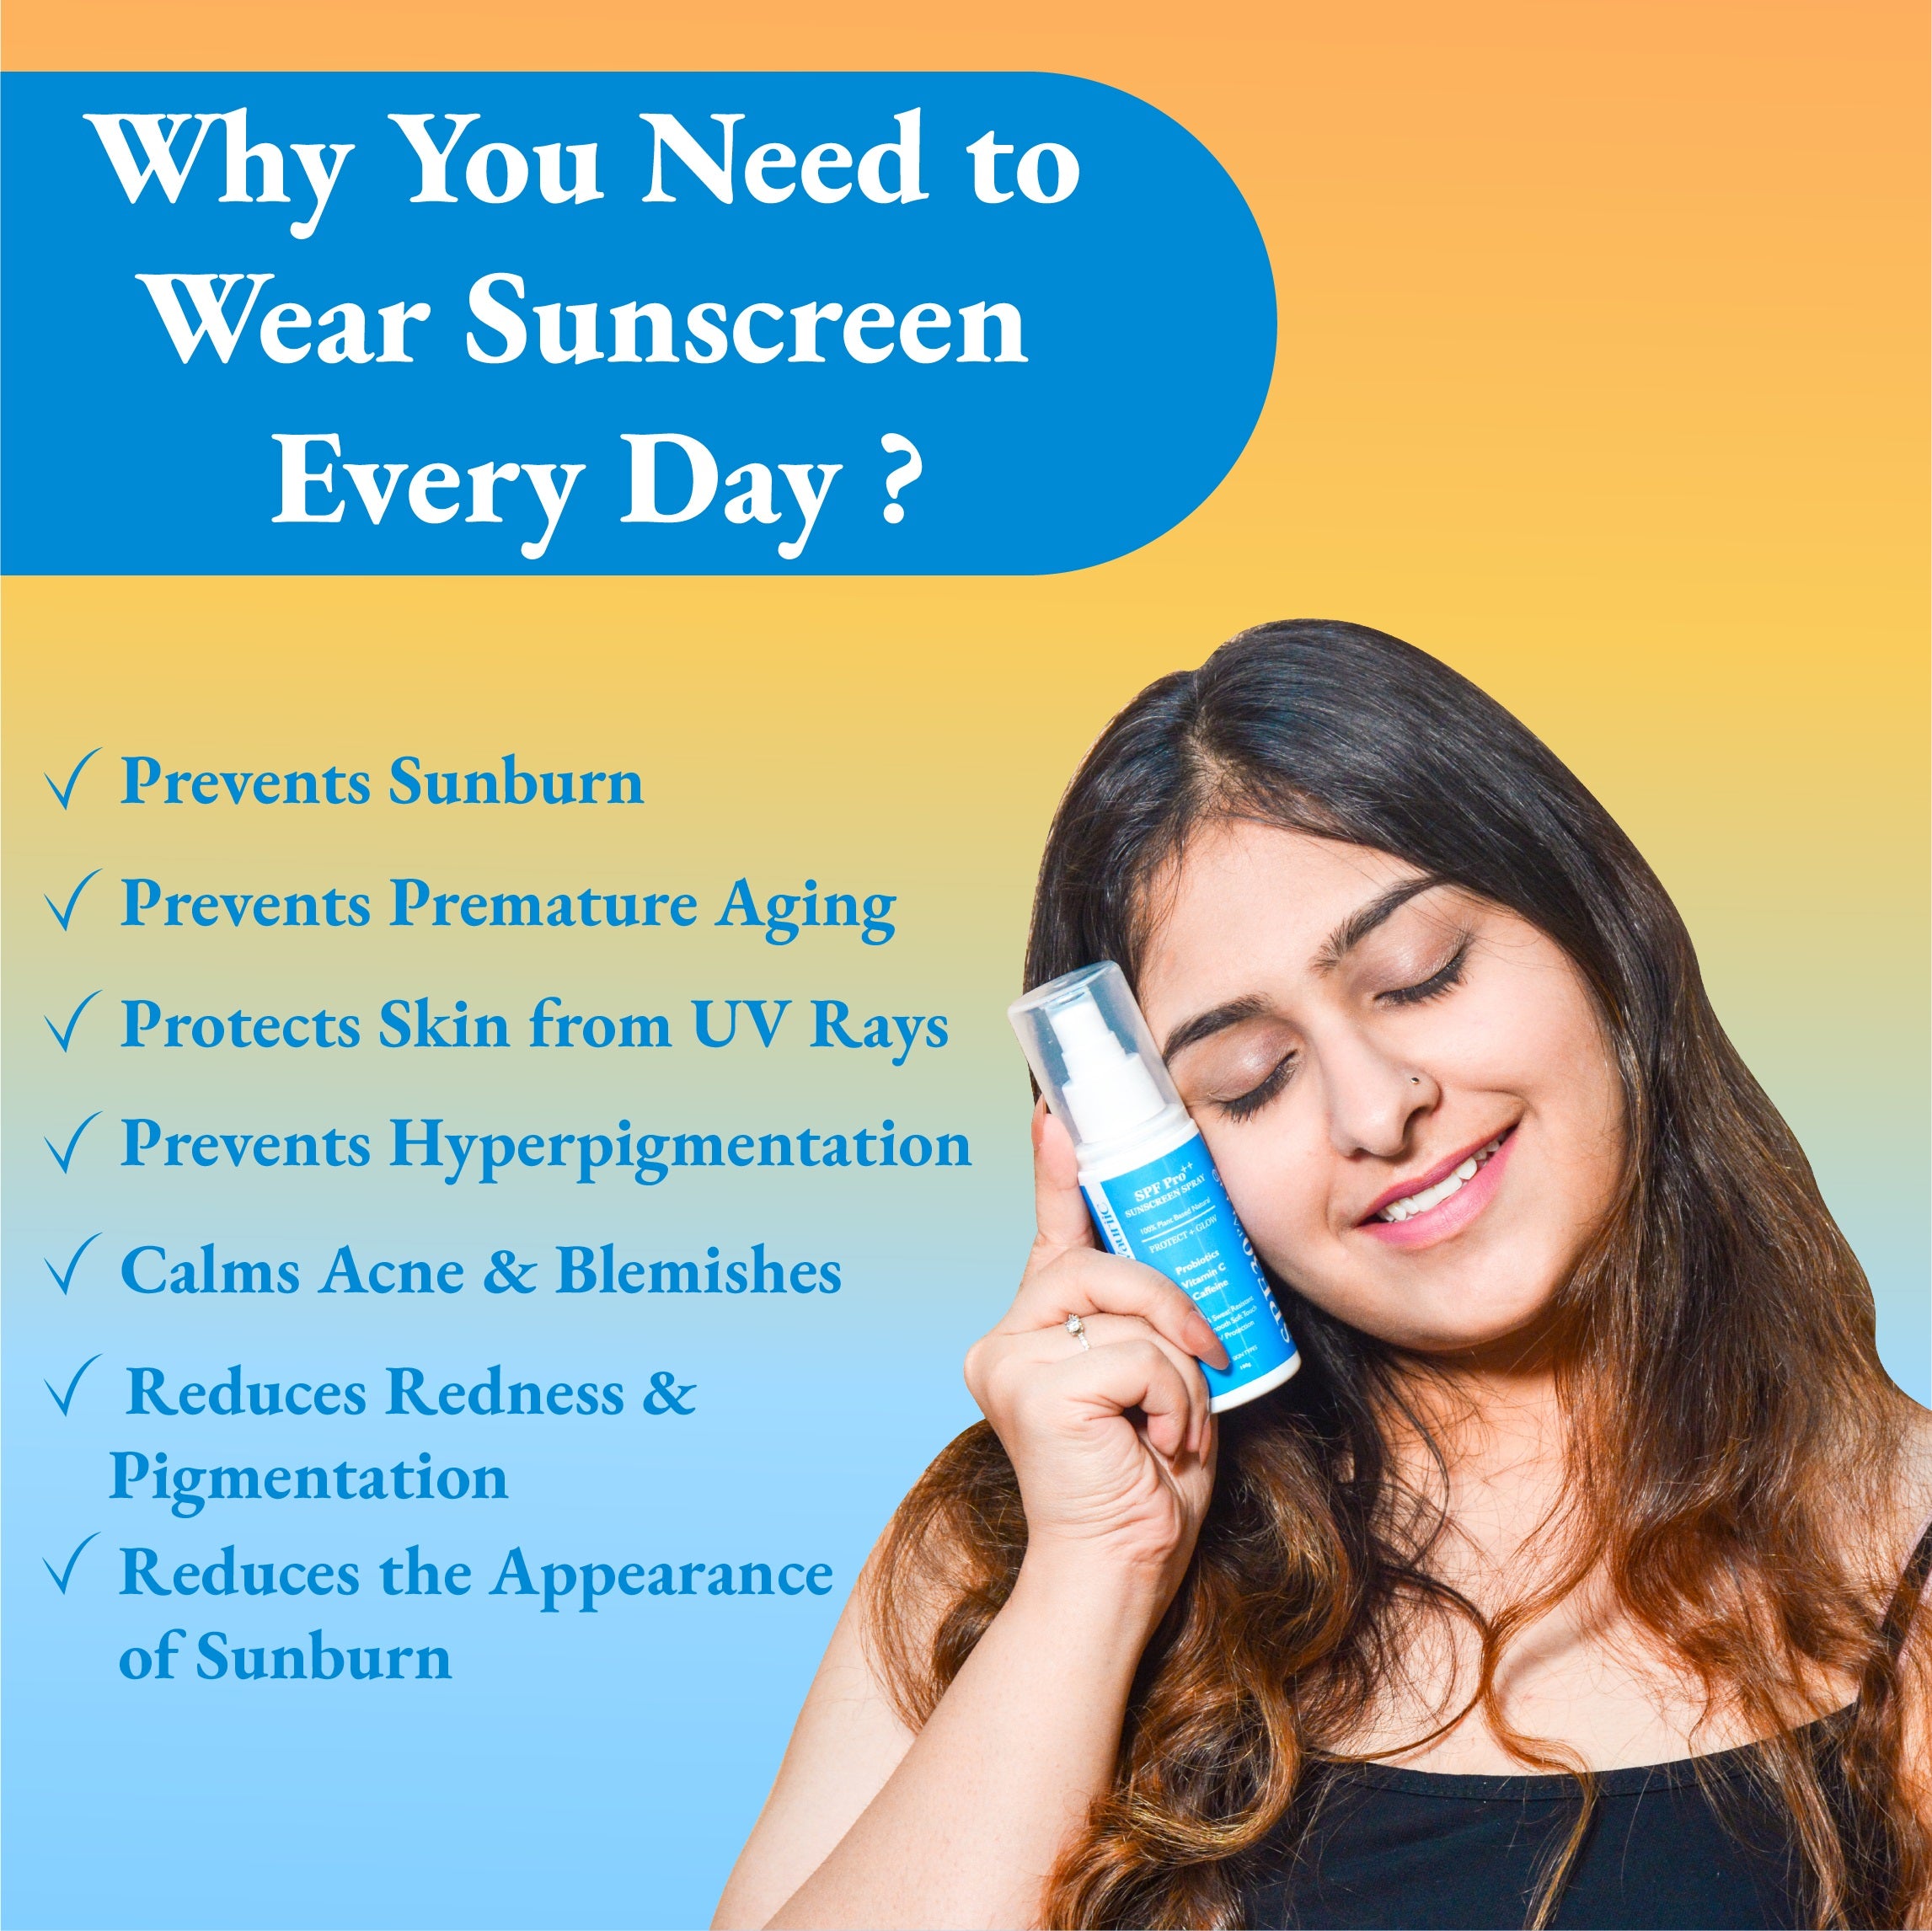 Sunscreen Spray SPF-30 - Easy Protection